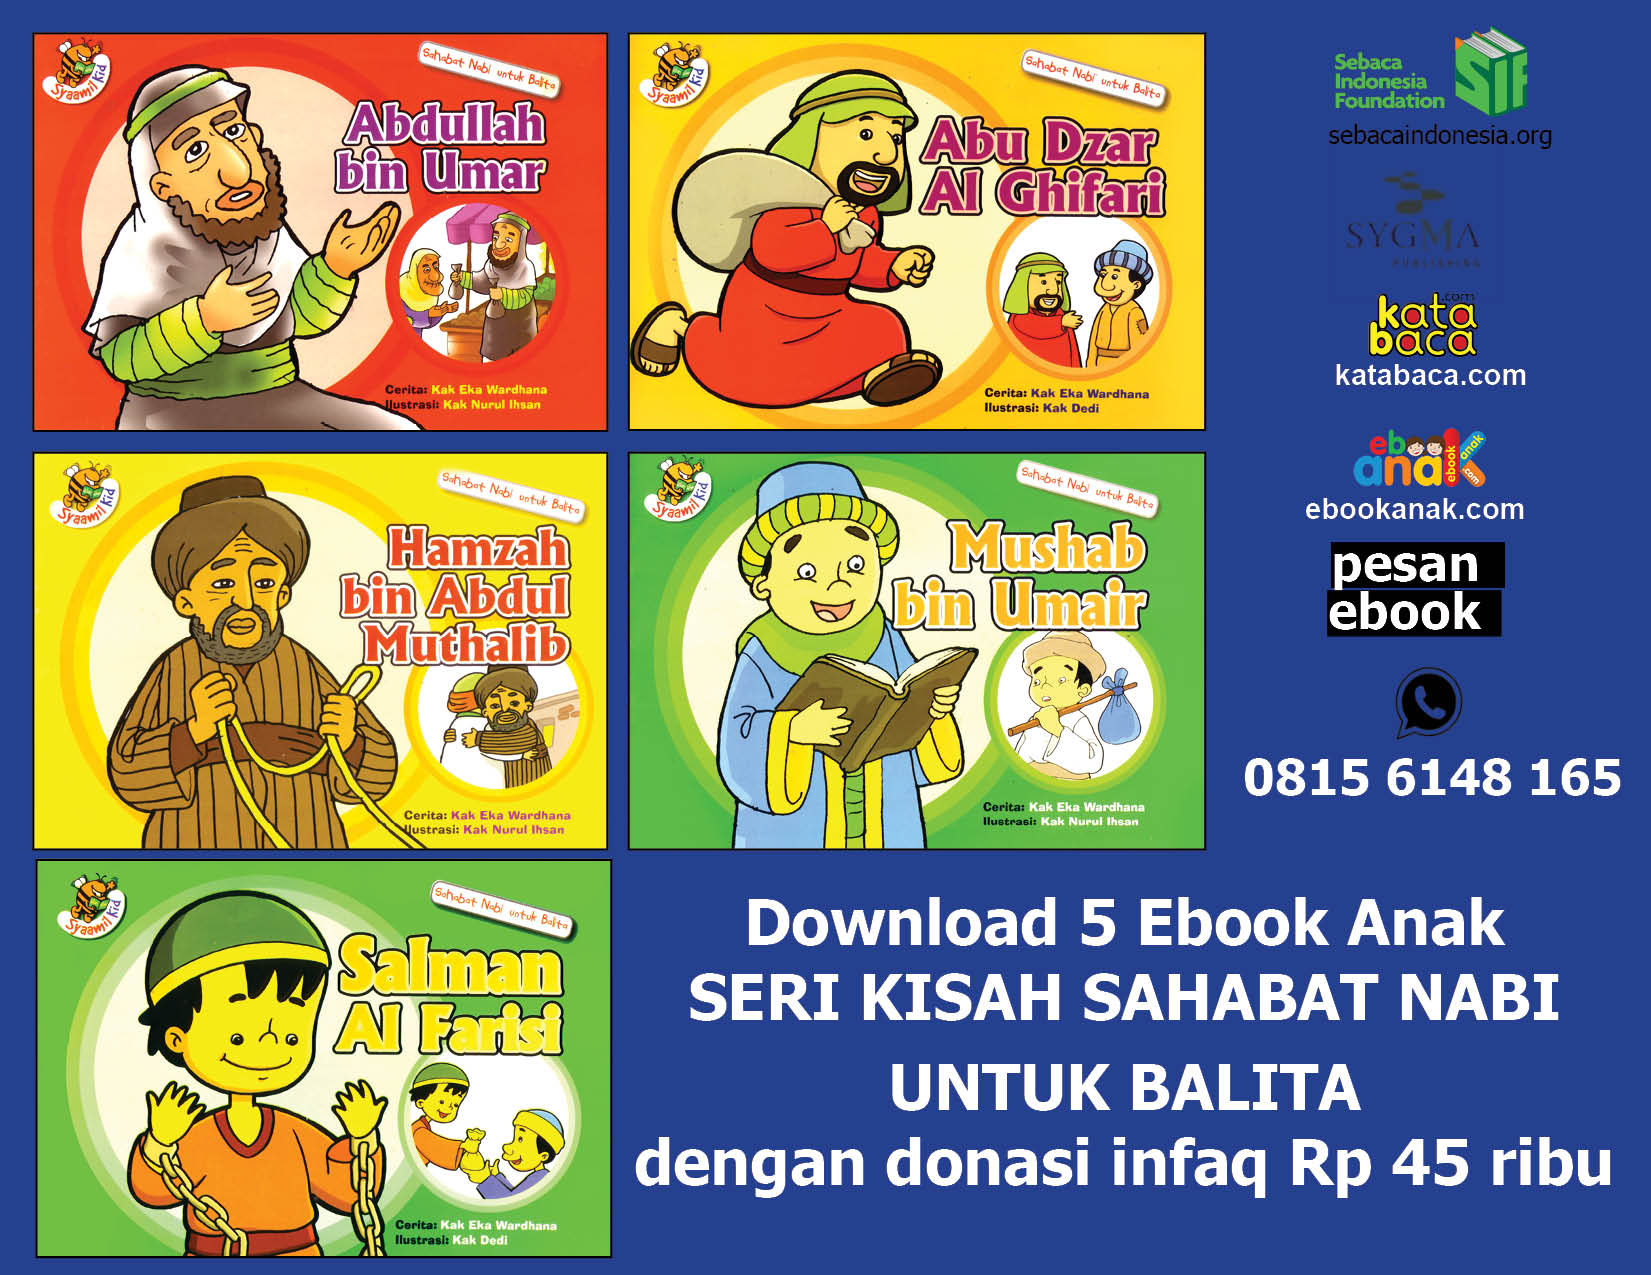 Download 5 Ebook Seri Kisah Sahabat Nabi Ebook Anak